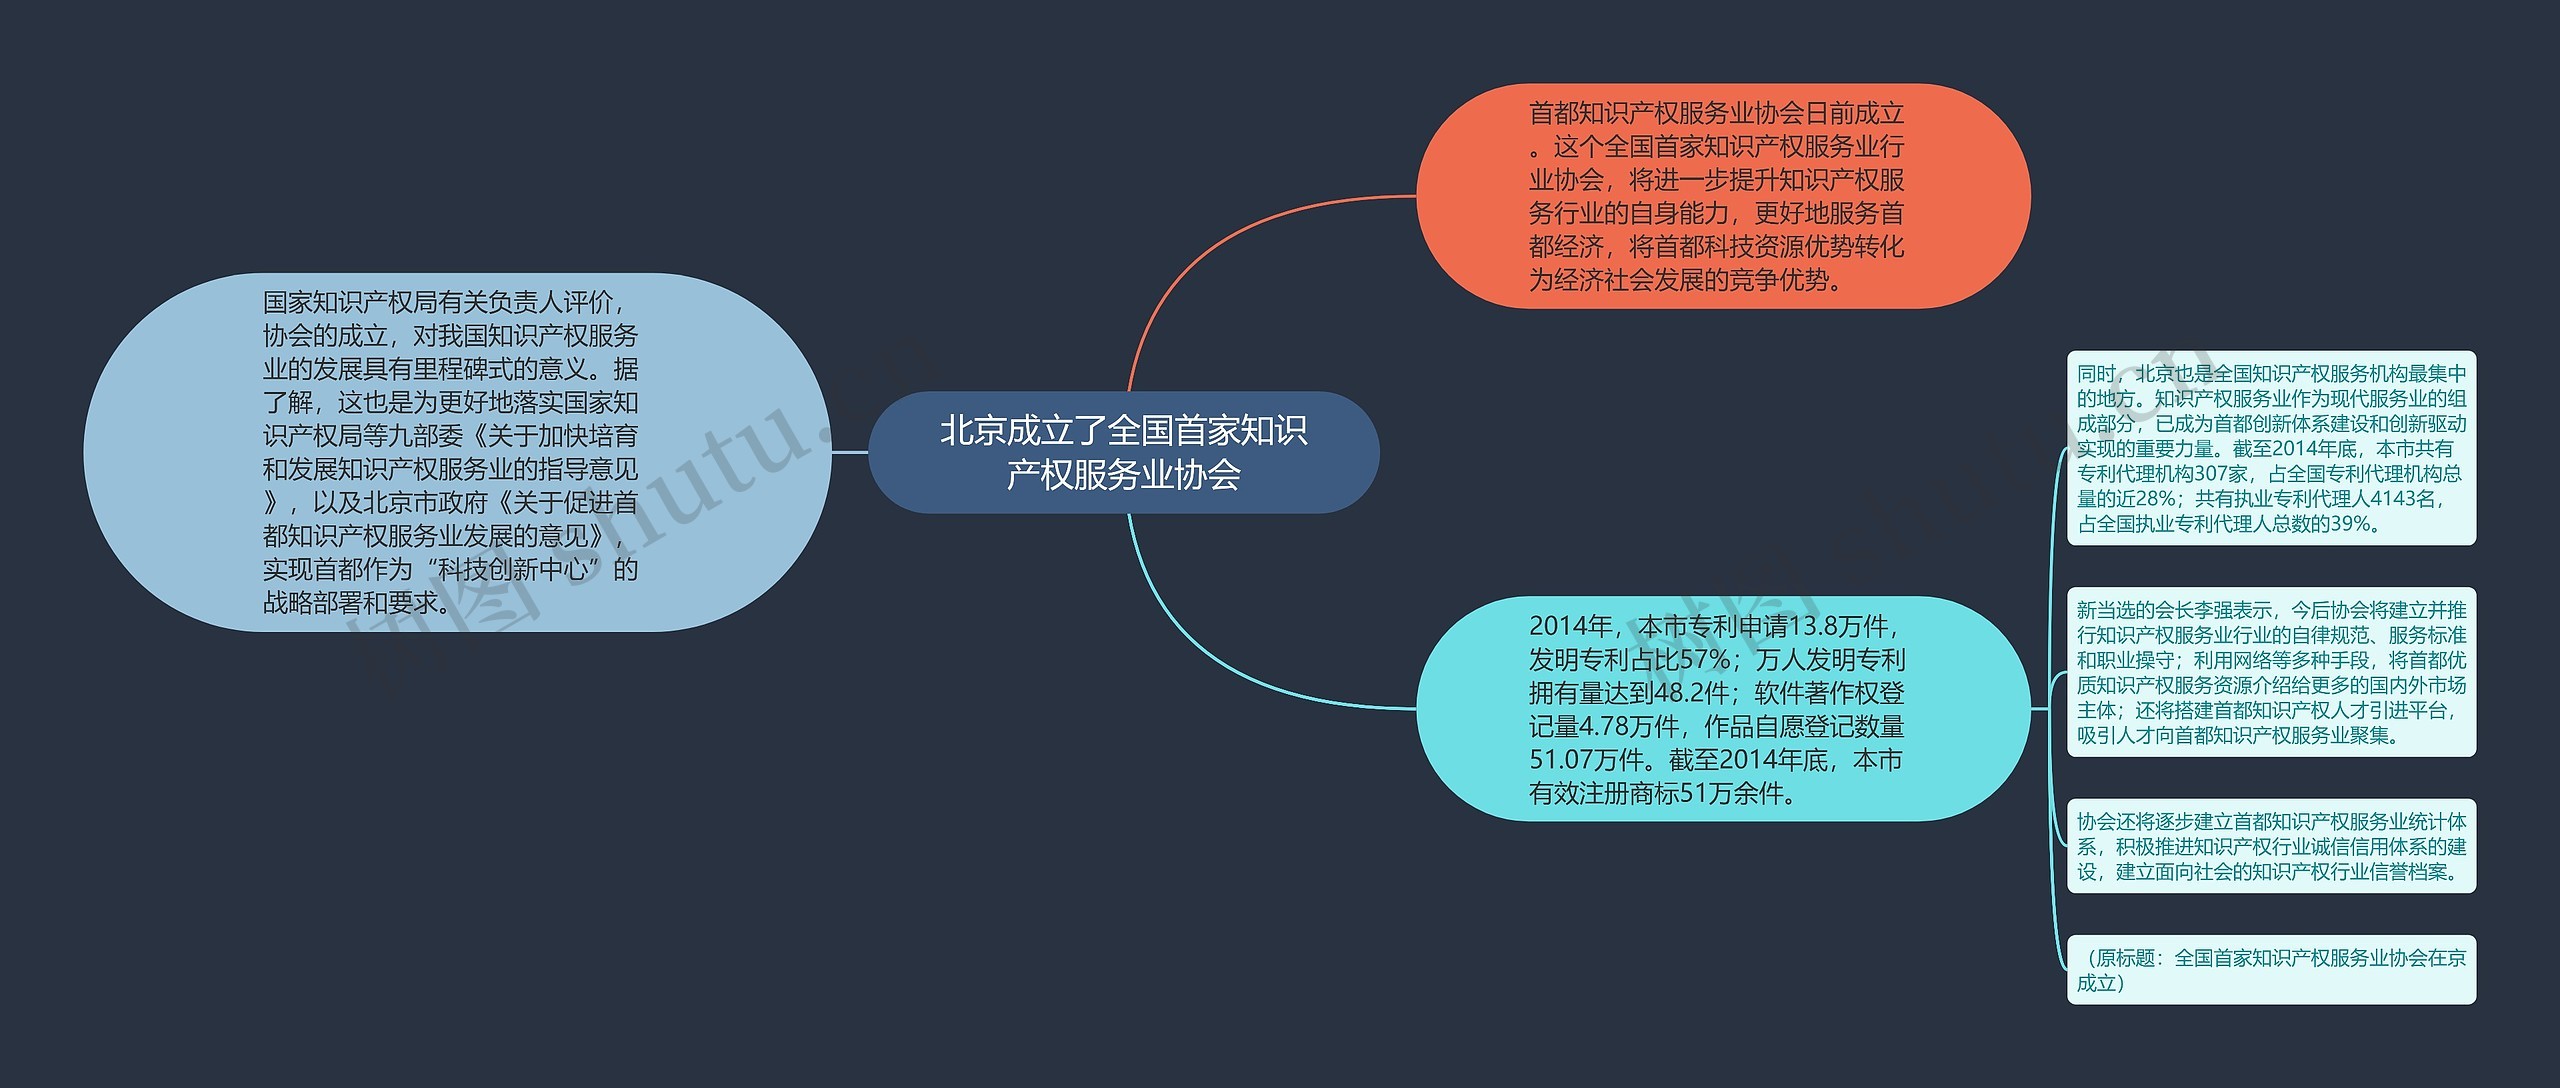 北京成立了全国首家知识产权服务业协会思维导图